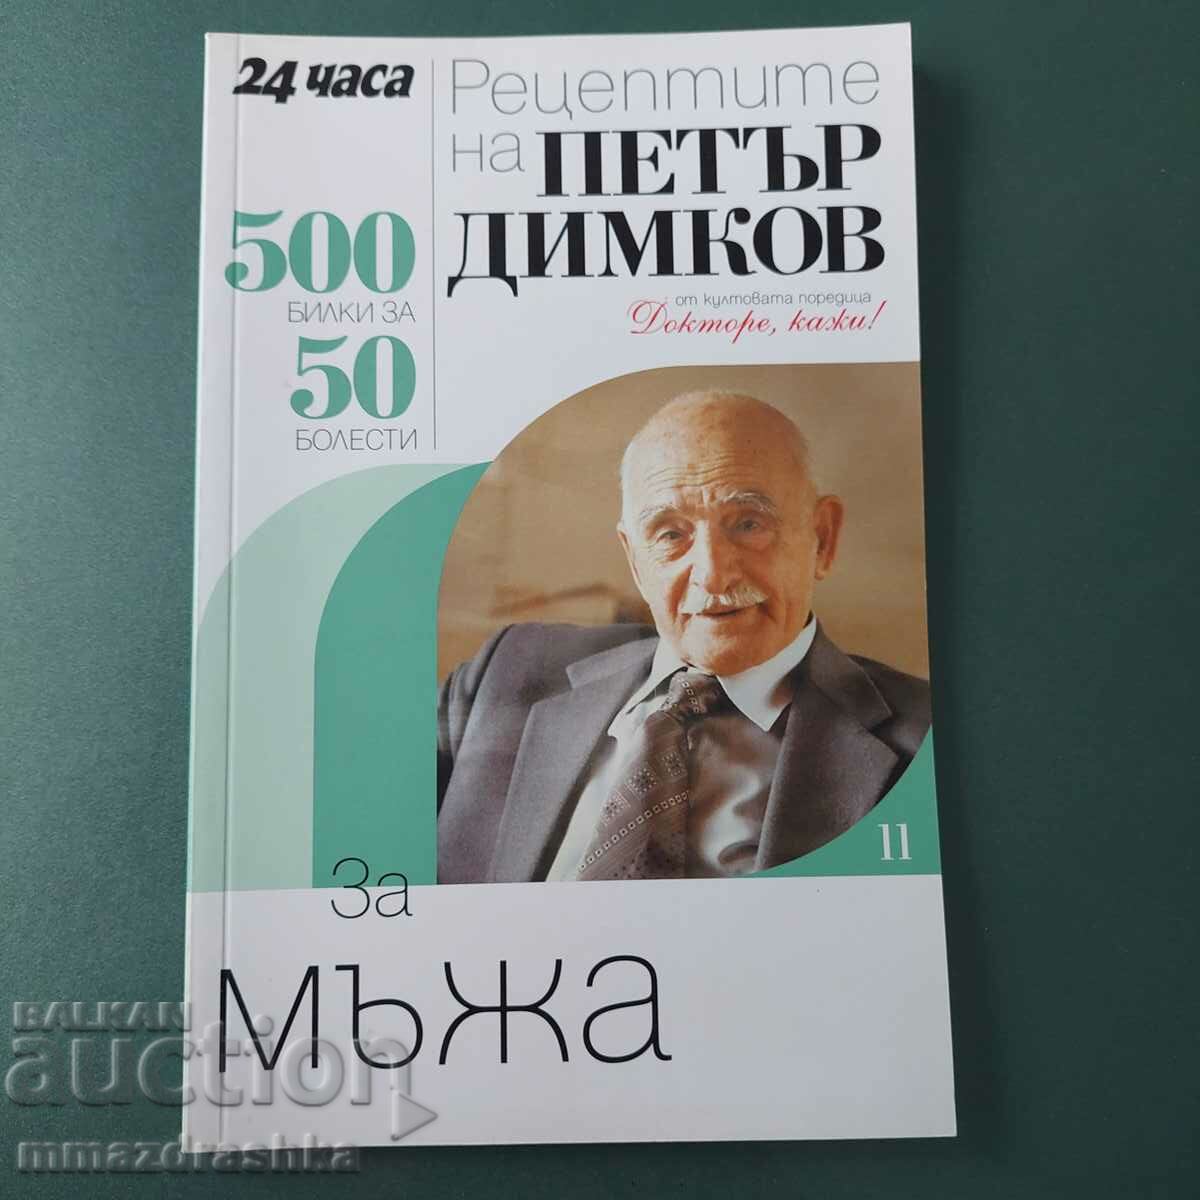 500 de rețete pentru bărbați, Petar Dimkov